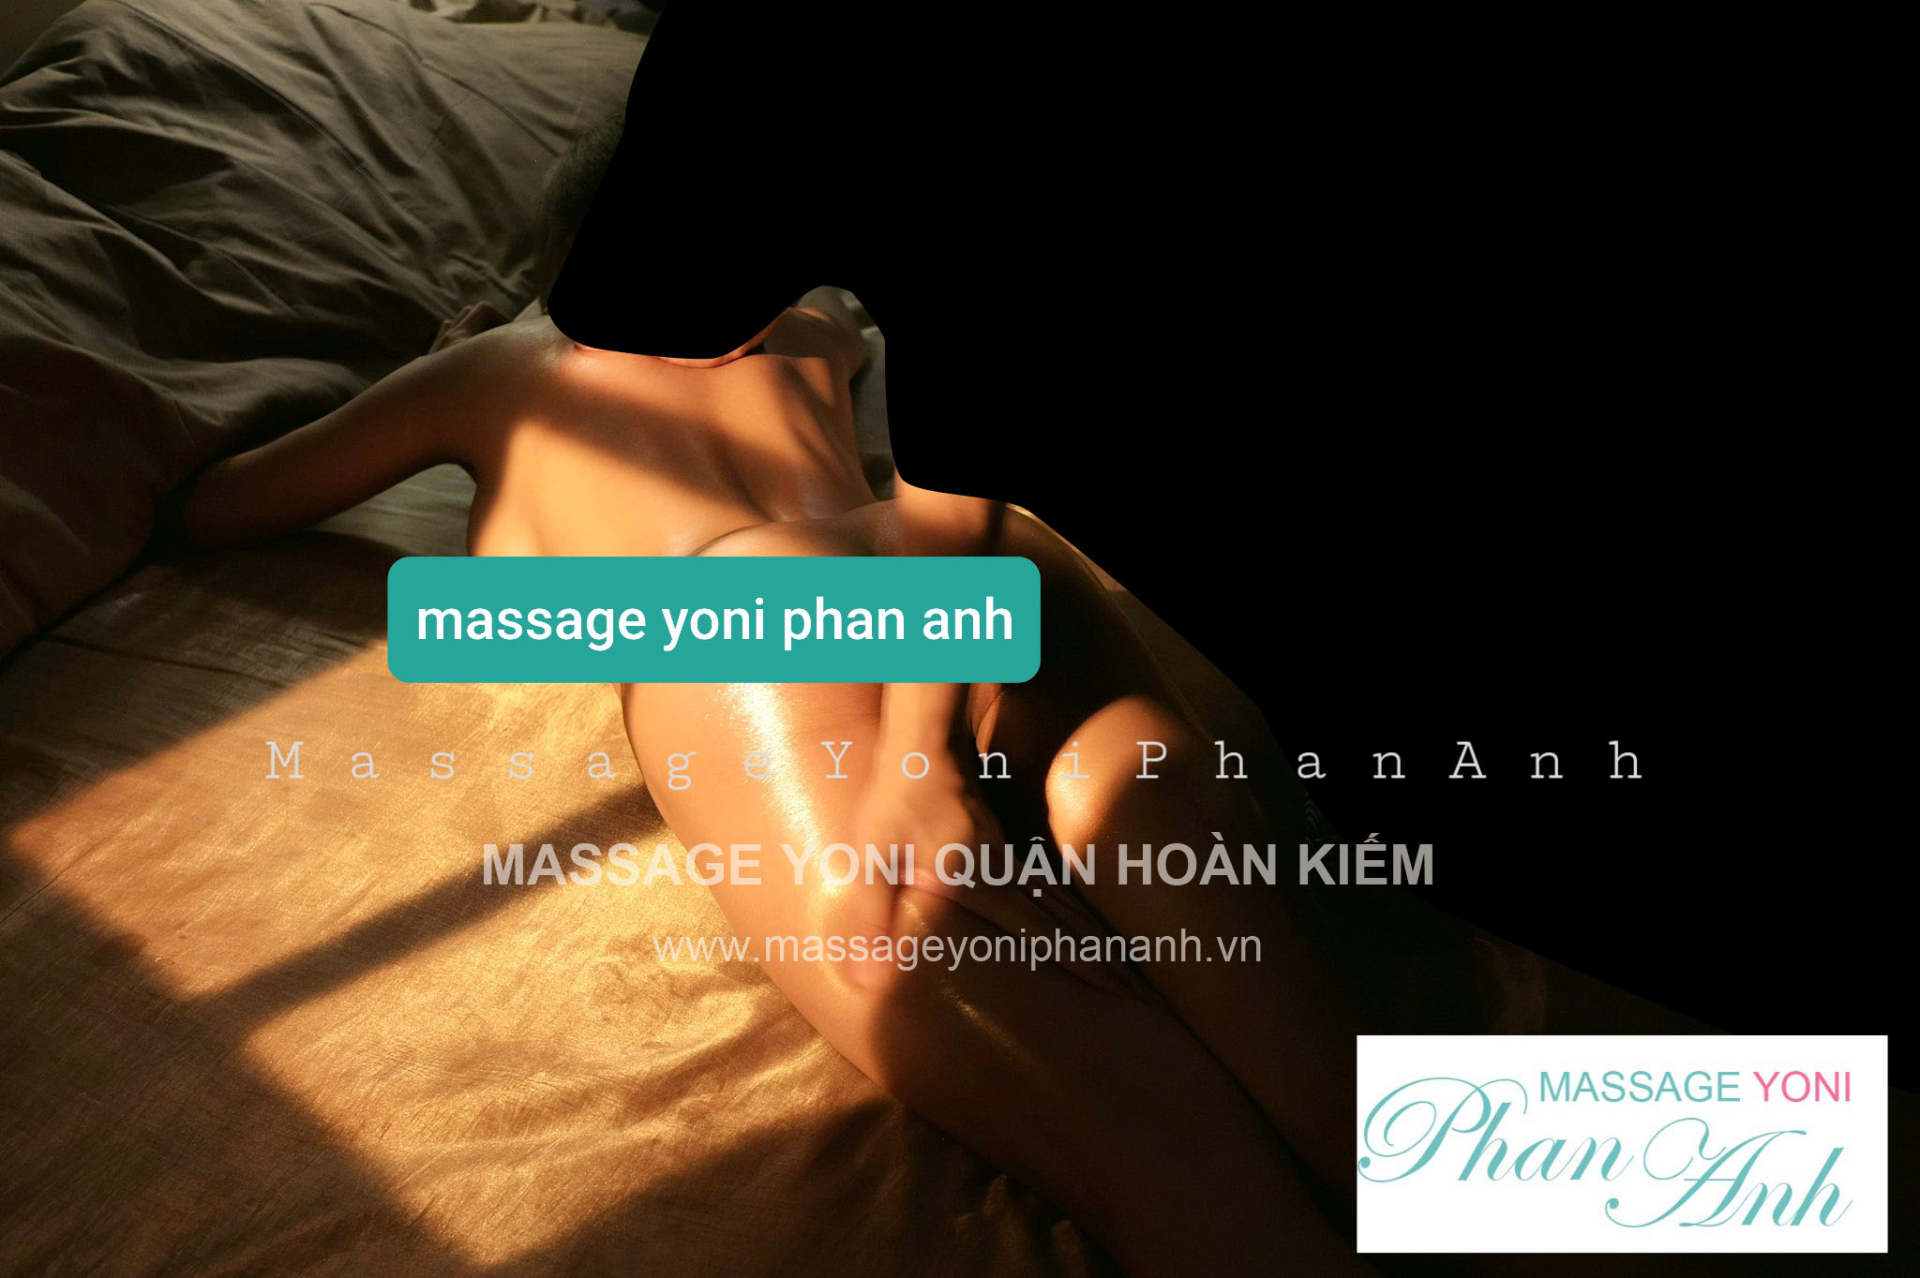 massage yoni tại nhà và khách sạn quận Hoàn Kiếm